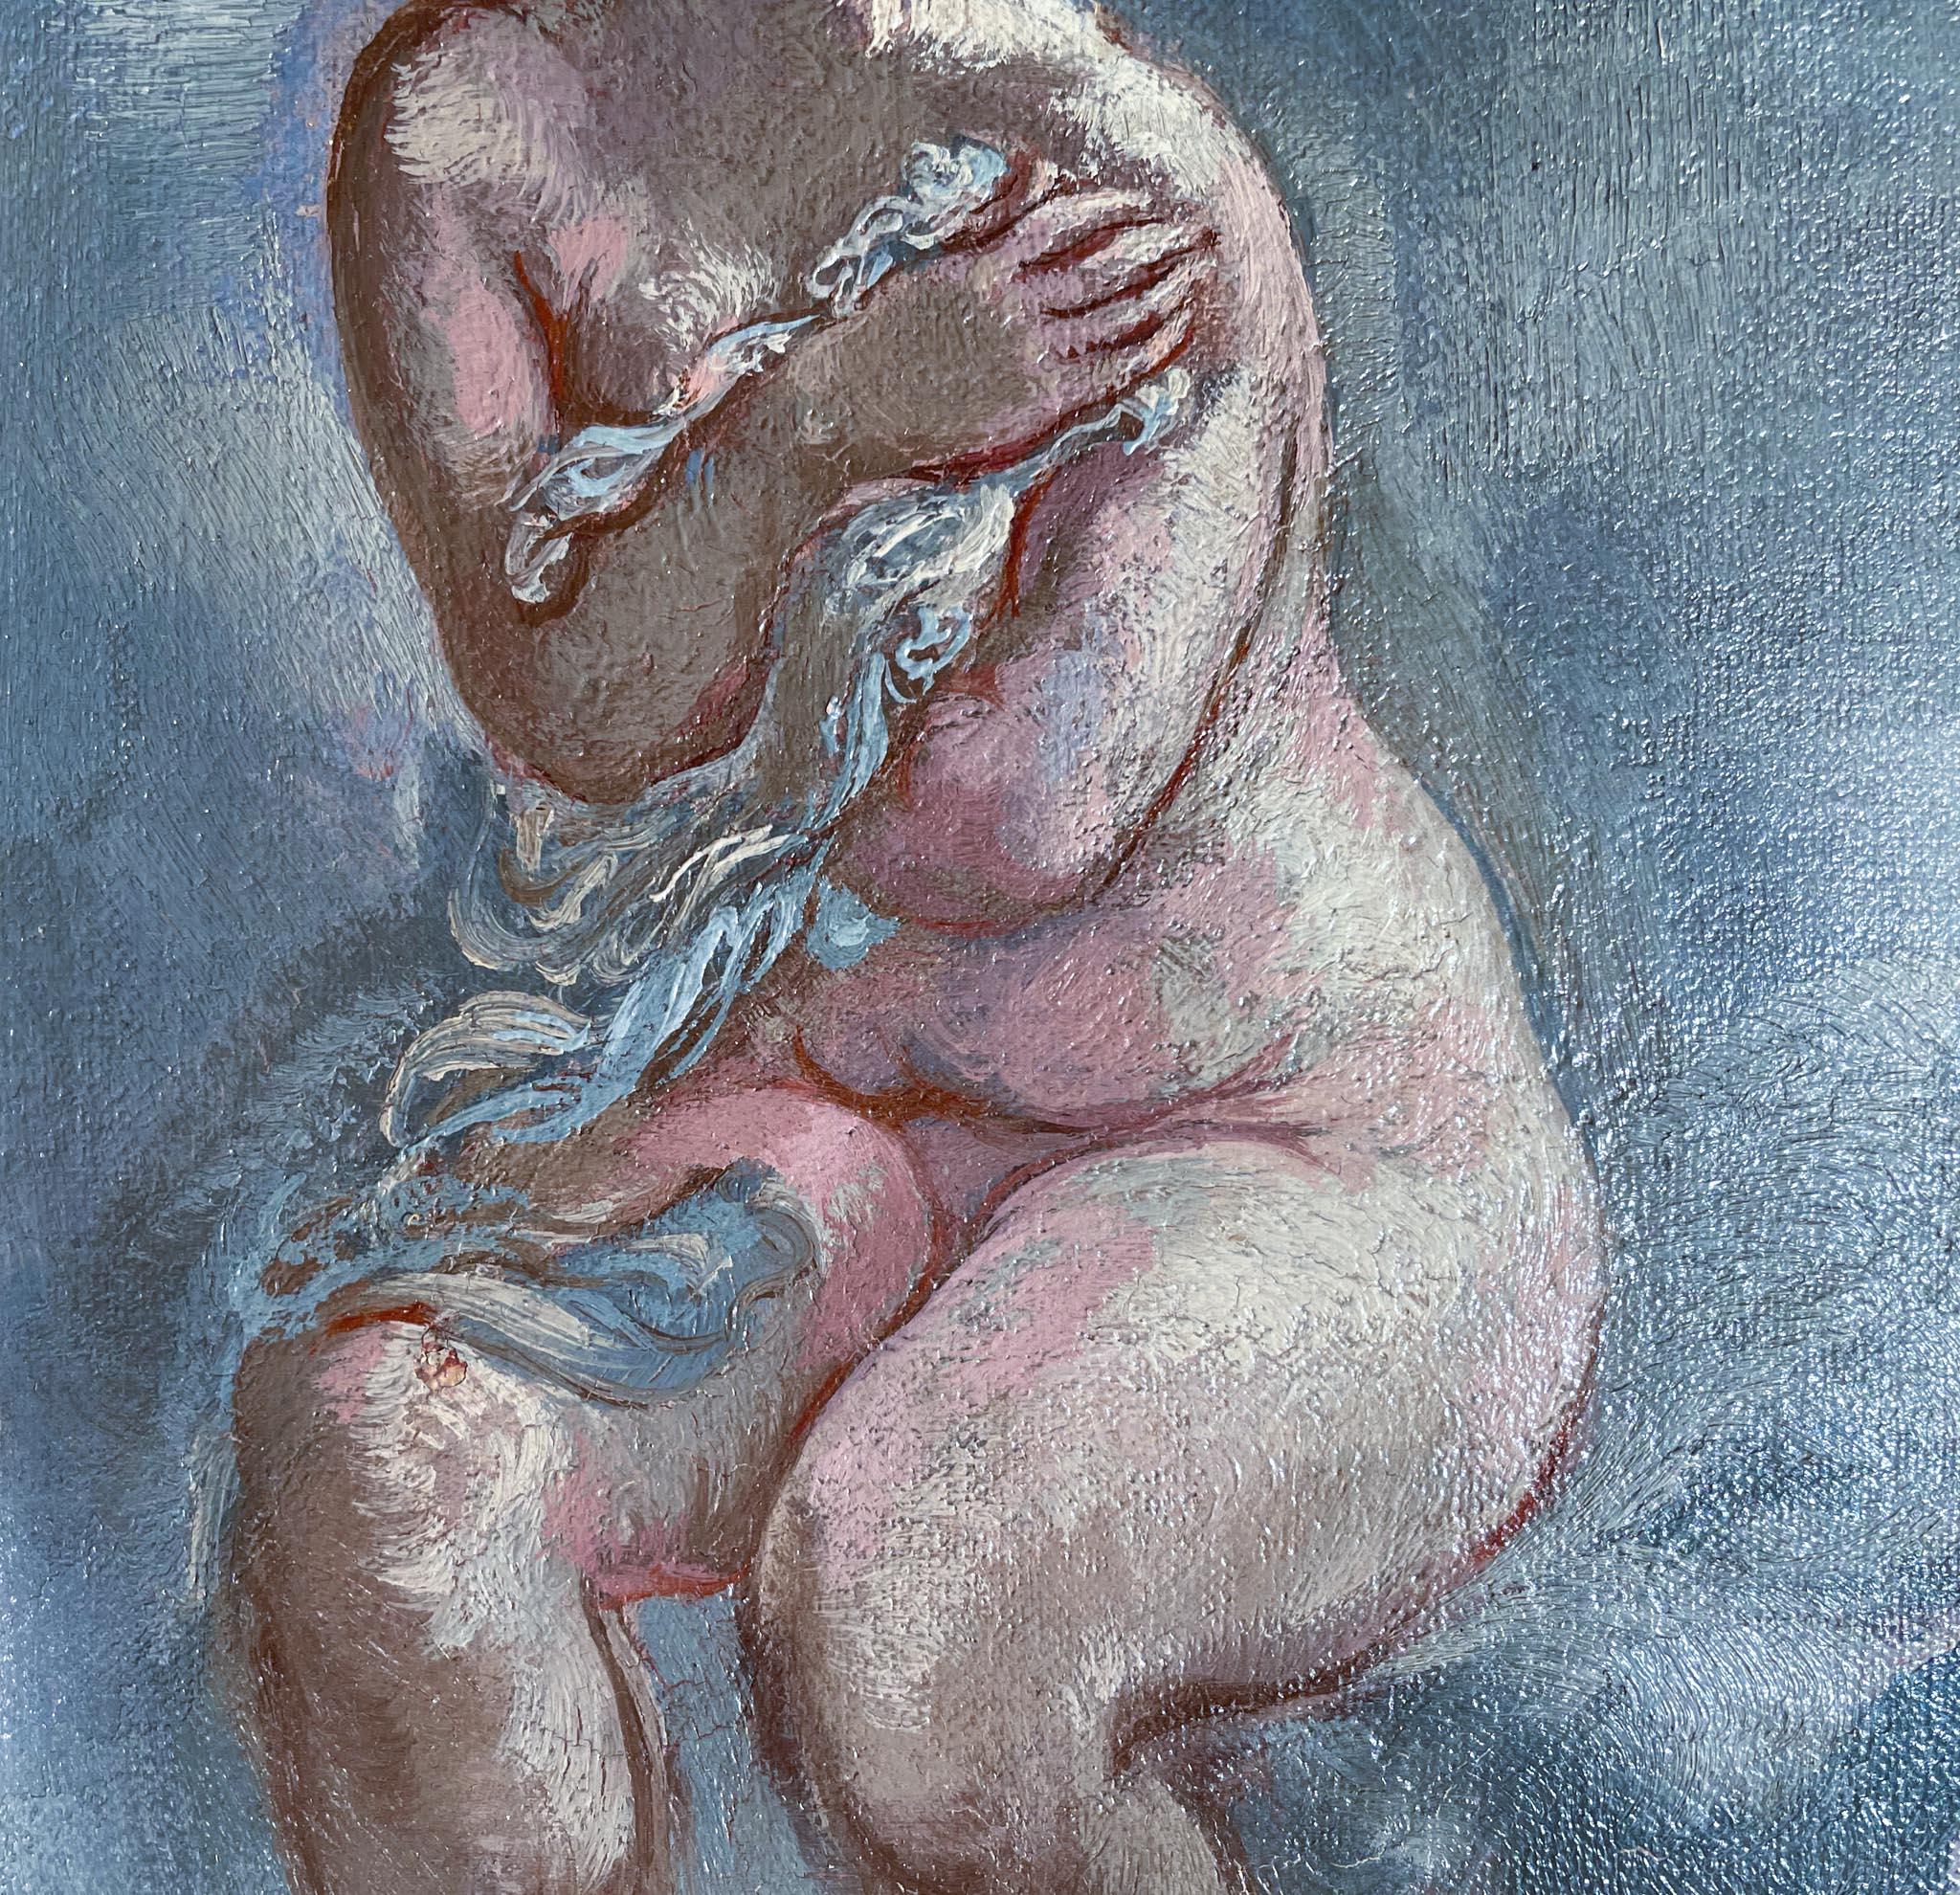 Nu assis de George Grosz (1893-1959)
Huile sur toile
9 ½ x 5 ½ pouces non encadré (24.13 x 13.97 cm)
15 x 12 pouces encadrés (38,1 x 30,48 cm)
Signé en bas à droite

Description :
Dans cette œuvre, George Grosz représente une femme nue qui se couvre